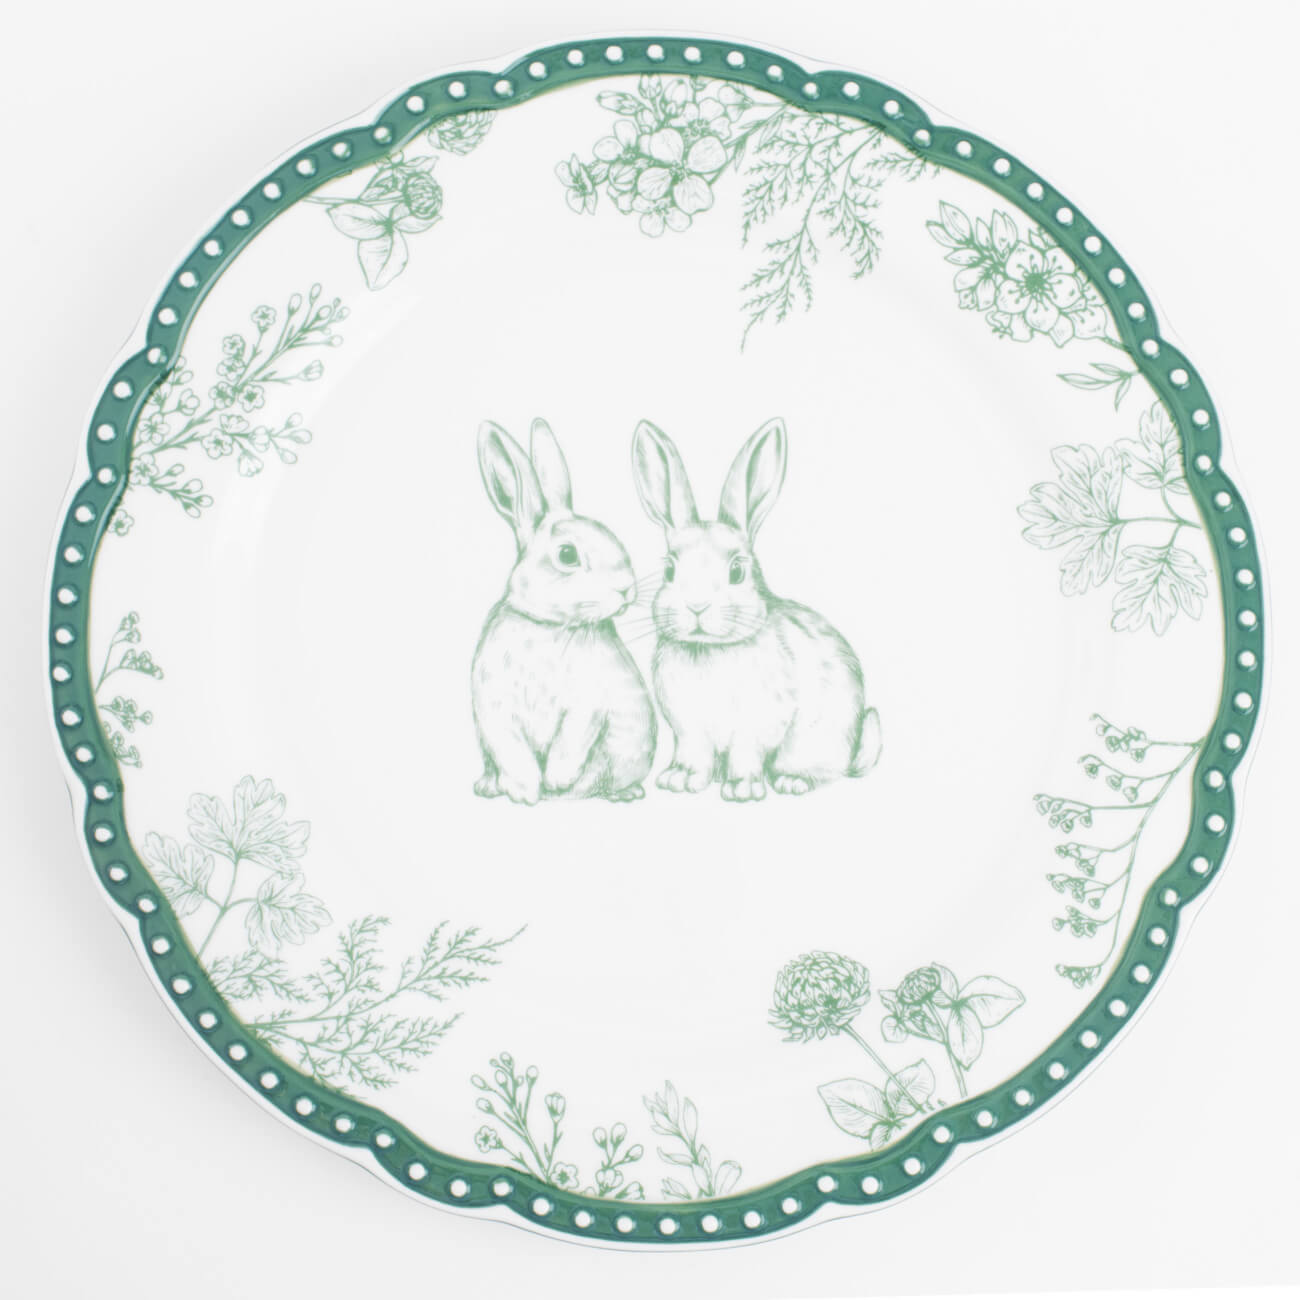 Тарелка обеденная, 27 см, керамика, бело-зеленая, Кролики и цветы, Easter blooming конфетница 18x14 см с ручкой керамика молочная кролики в корзине natural easter